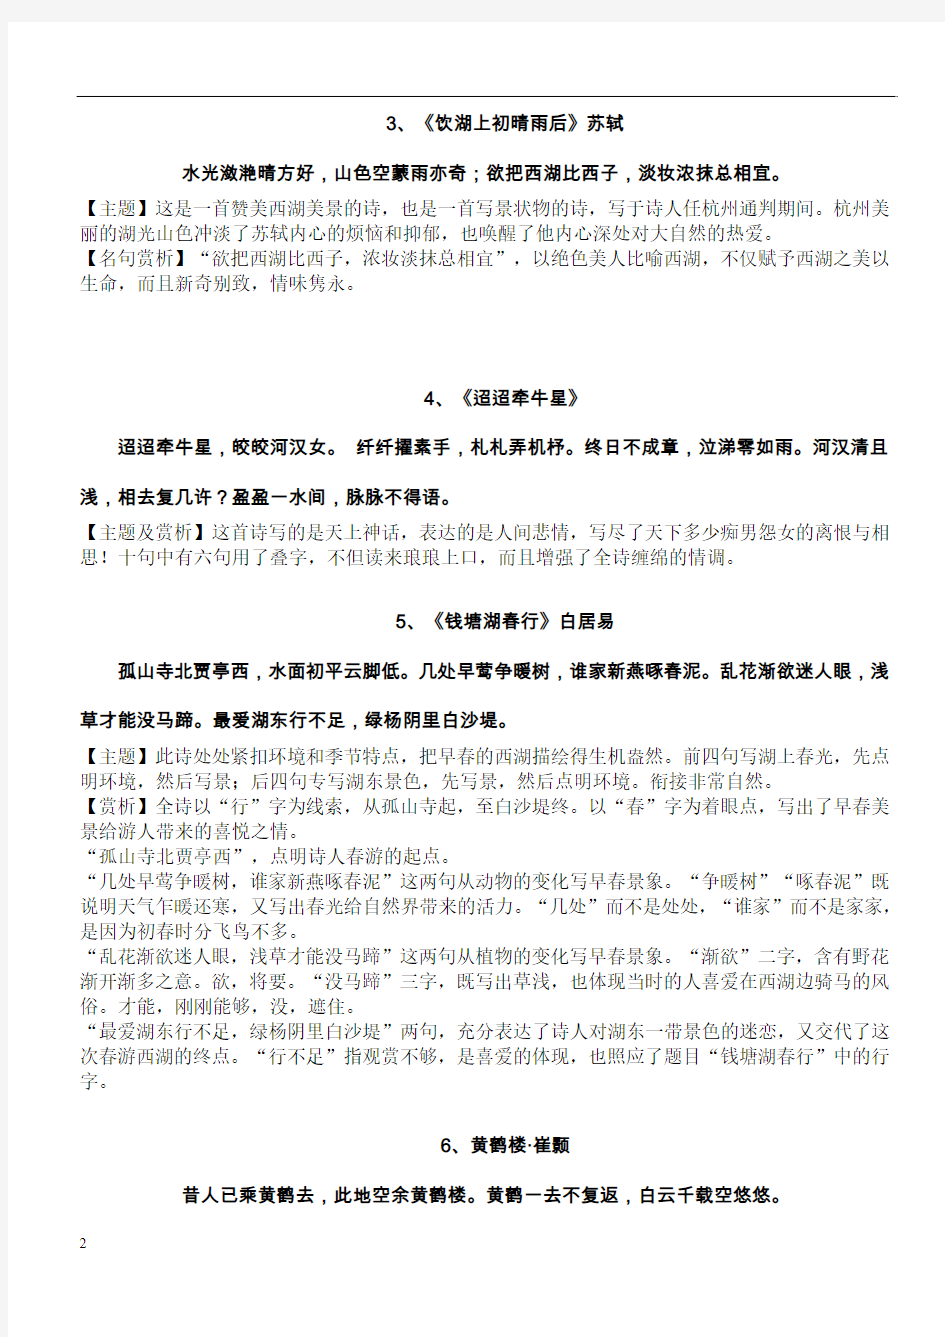 上海中考考试手册古诗词、文言文默写篇目整理.介绍